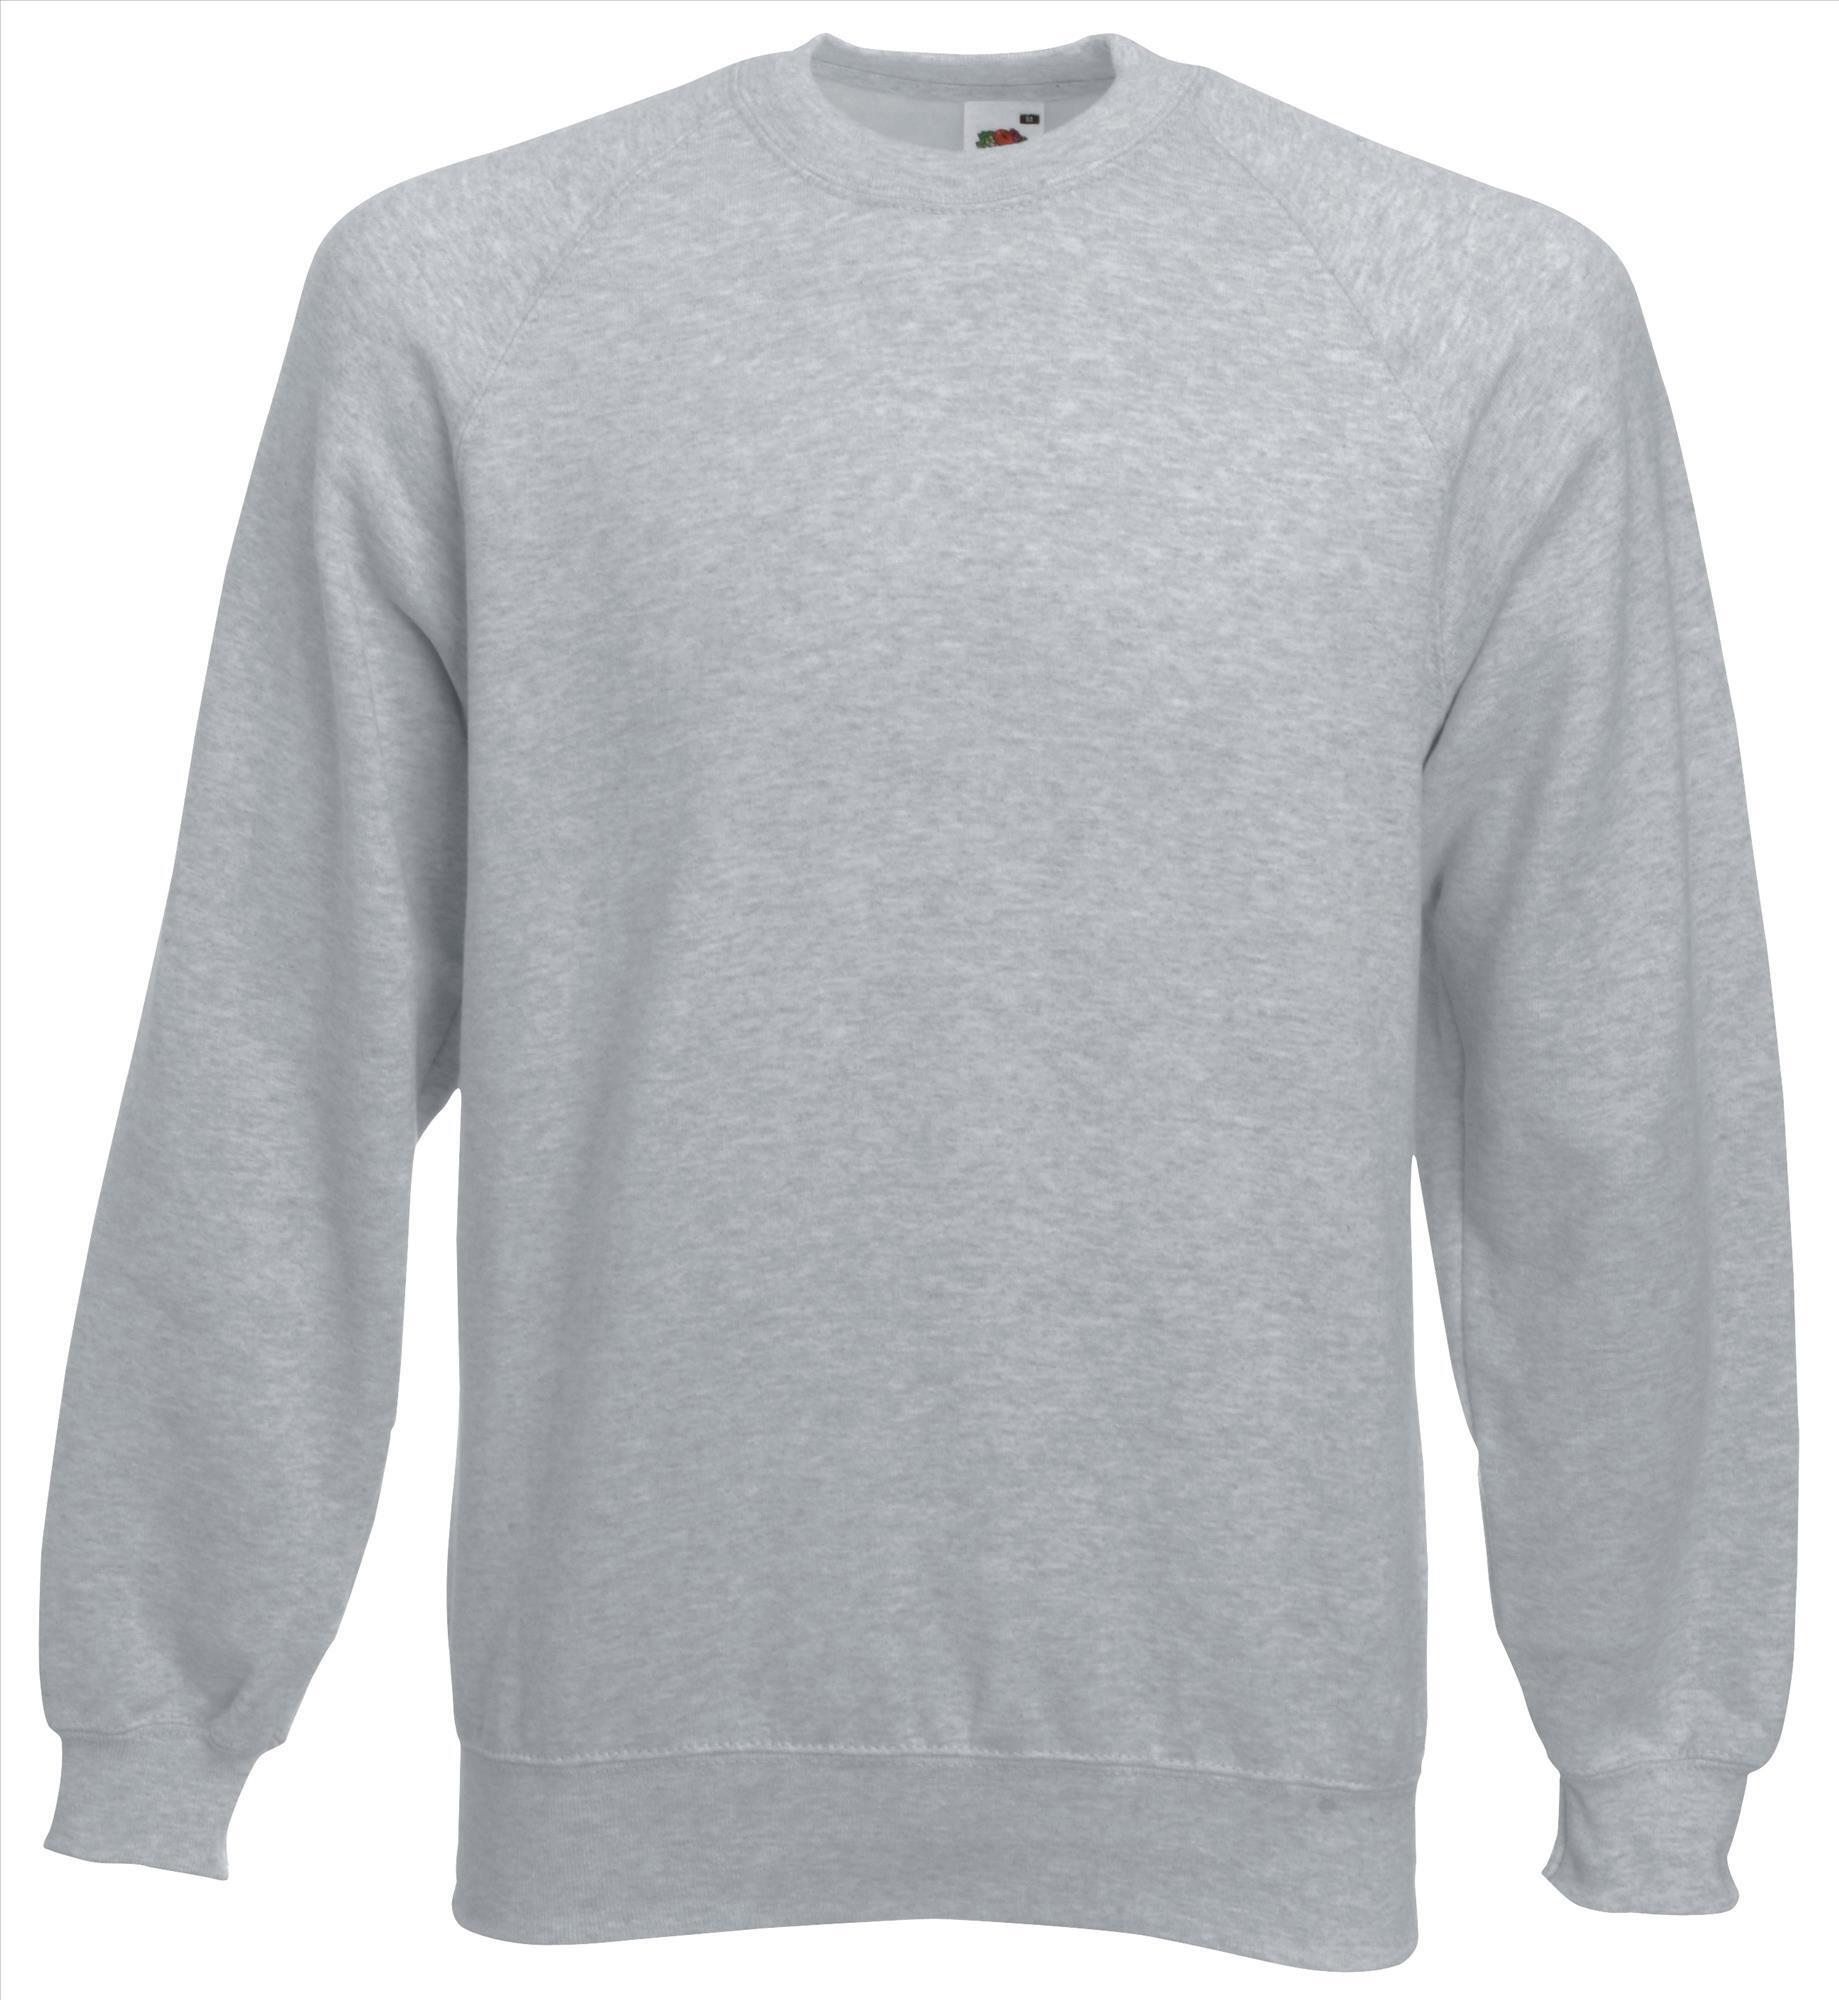 Sweater heide grijs voor mannen bedrukbaar te personaliseren sweatshirts